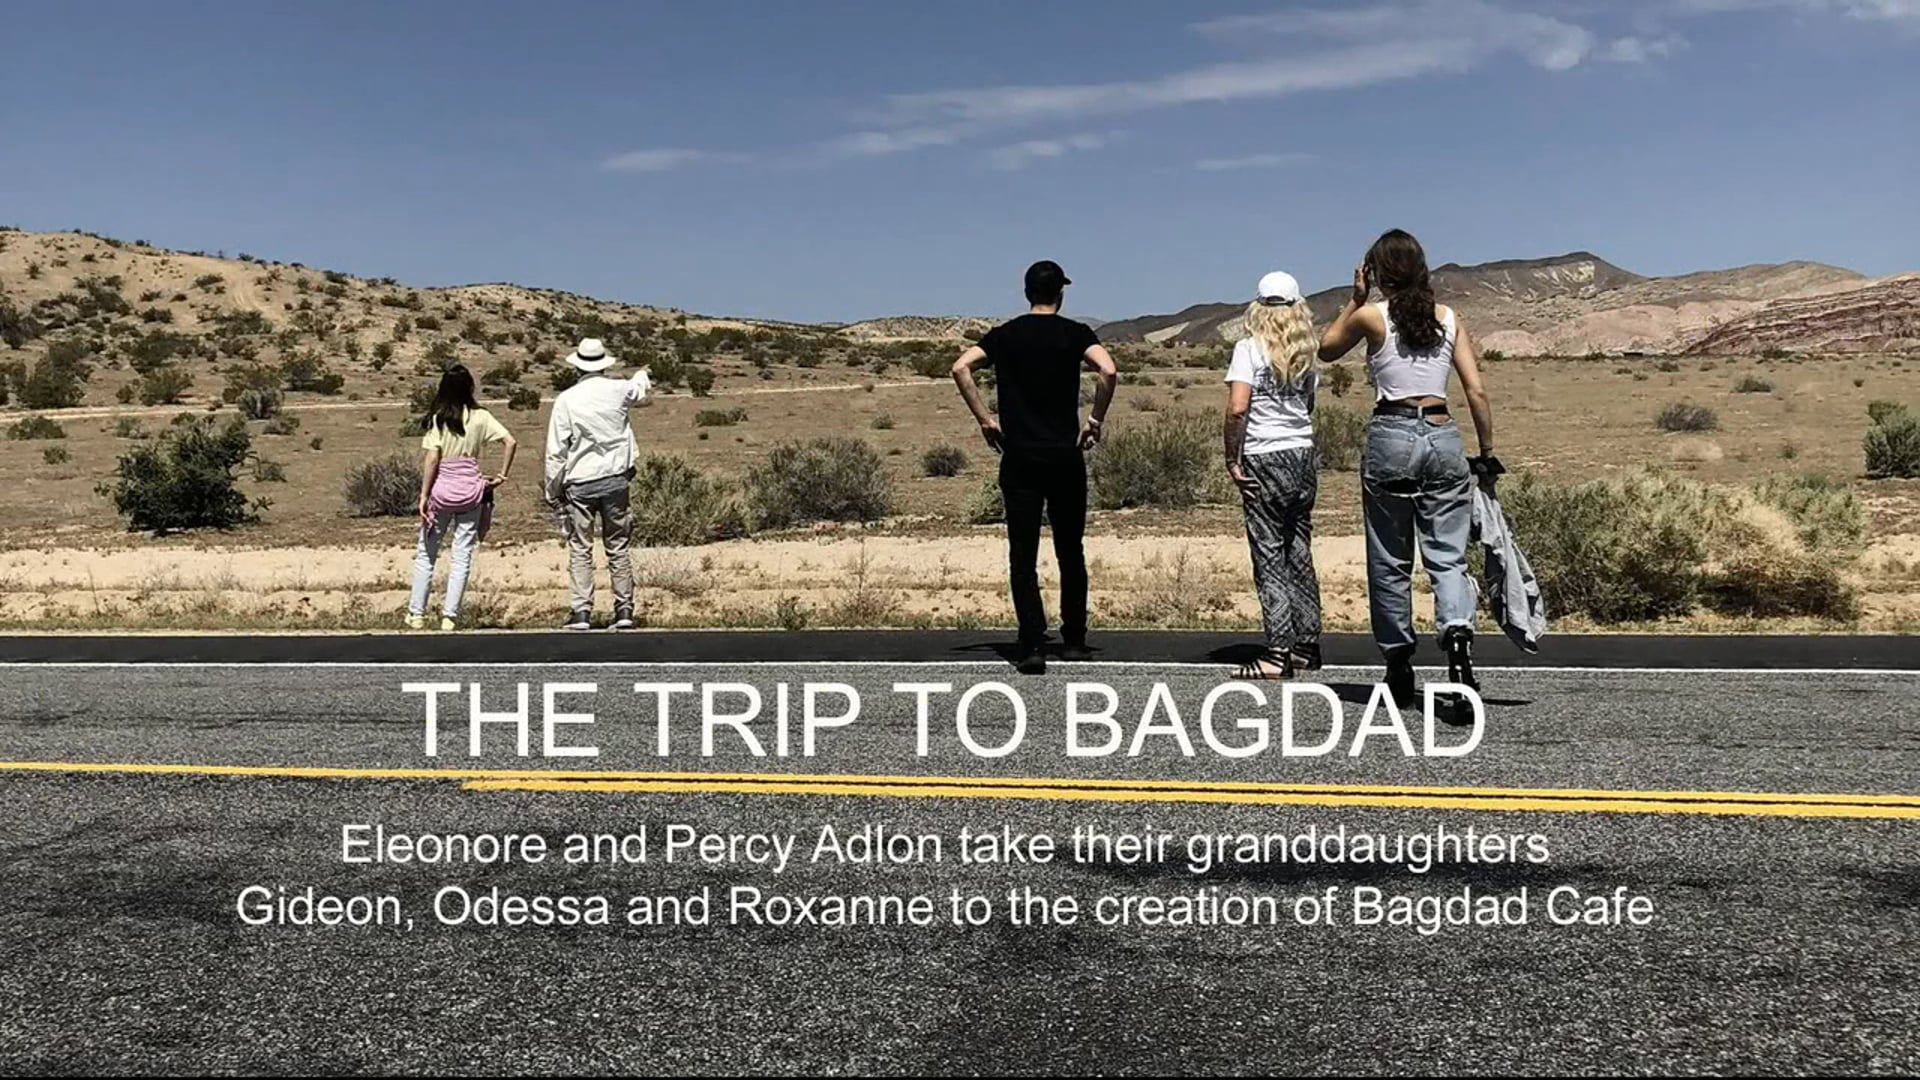 THE TRIP TO BAGDAD